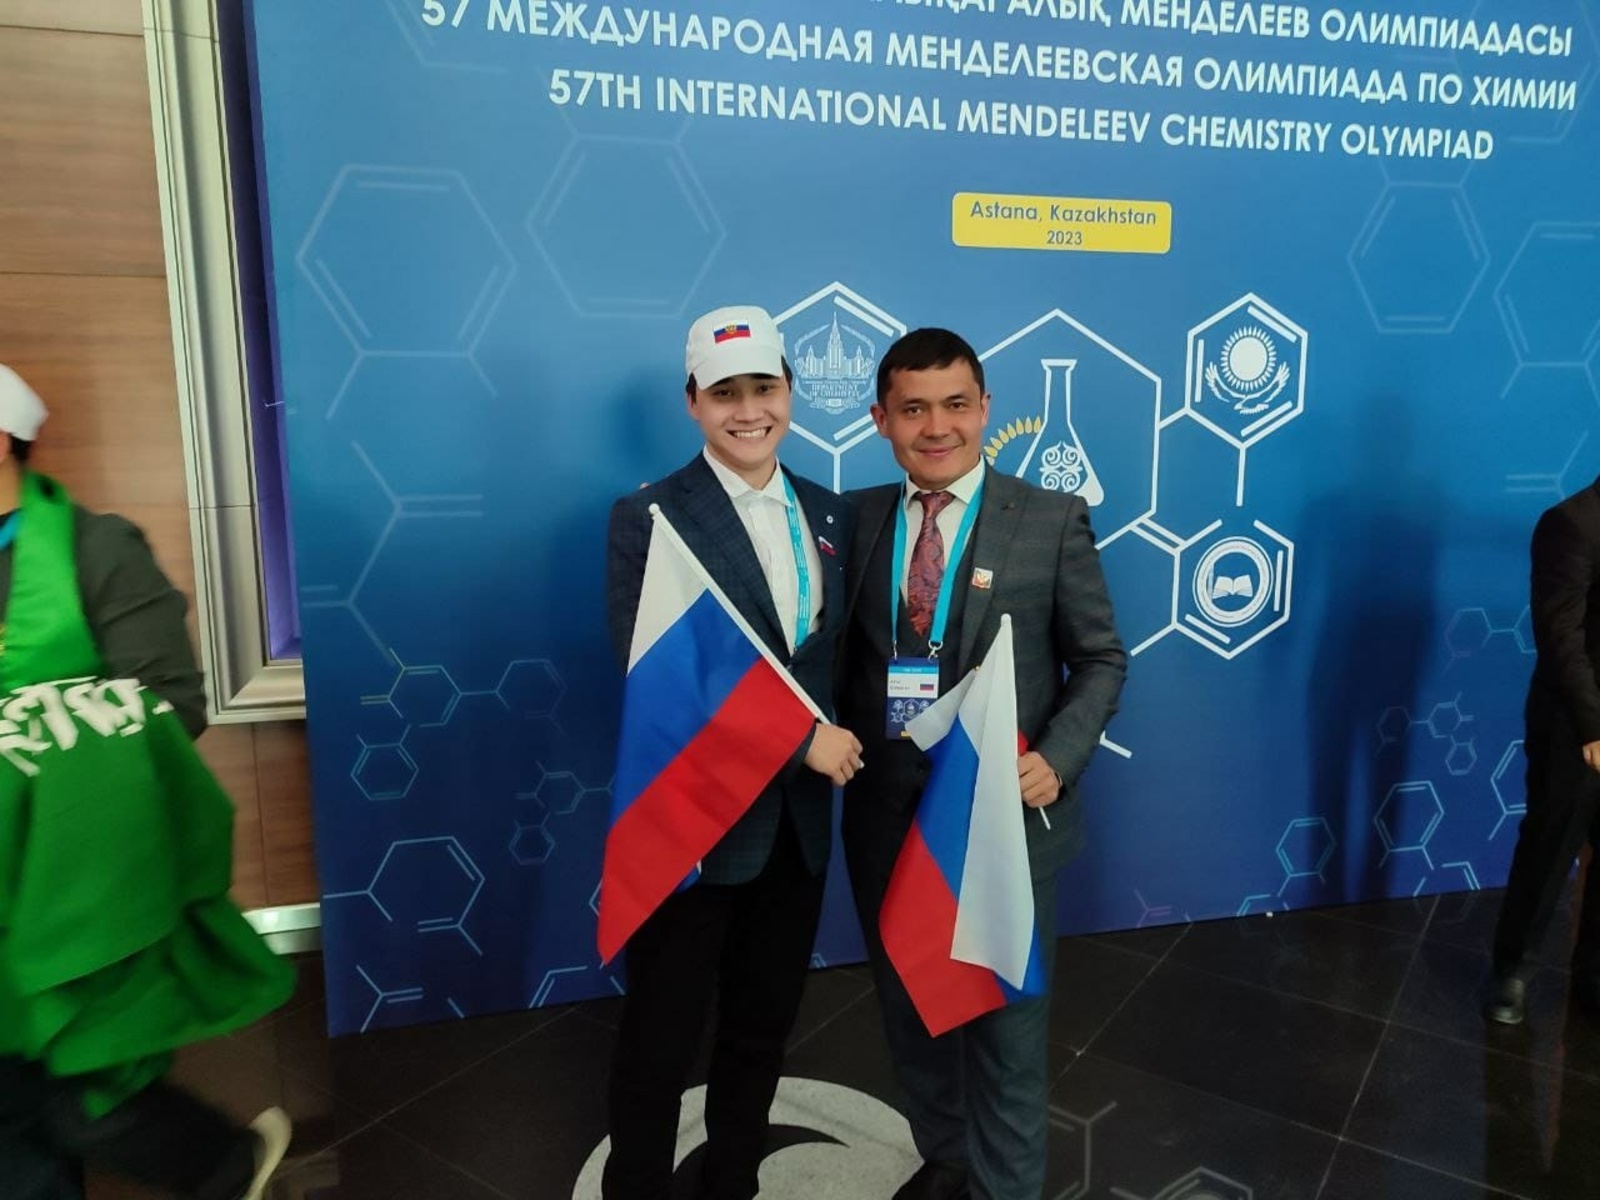 Десятиклассник из Башкирии стал победителем Международной Менделеевской олимпиады по химии